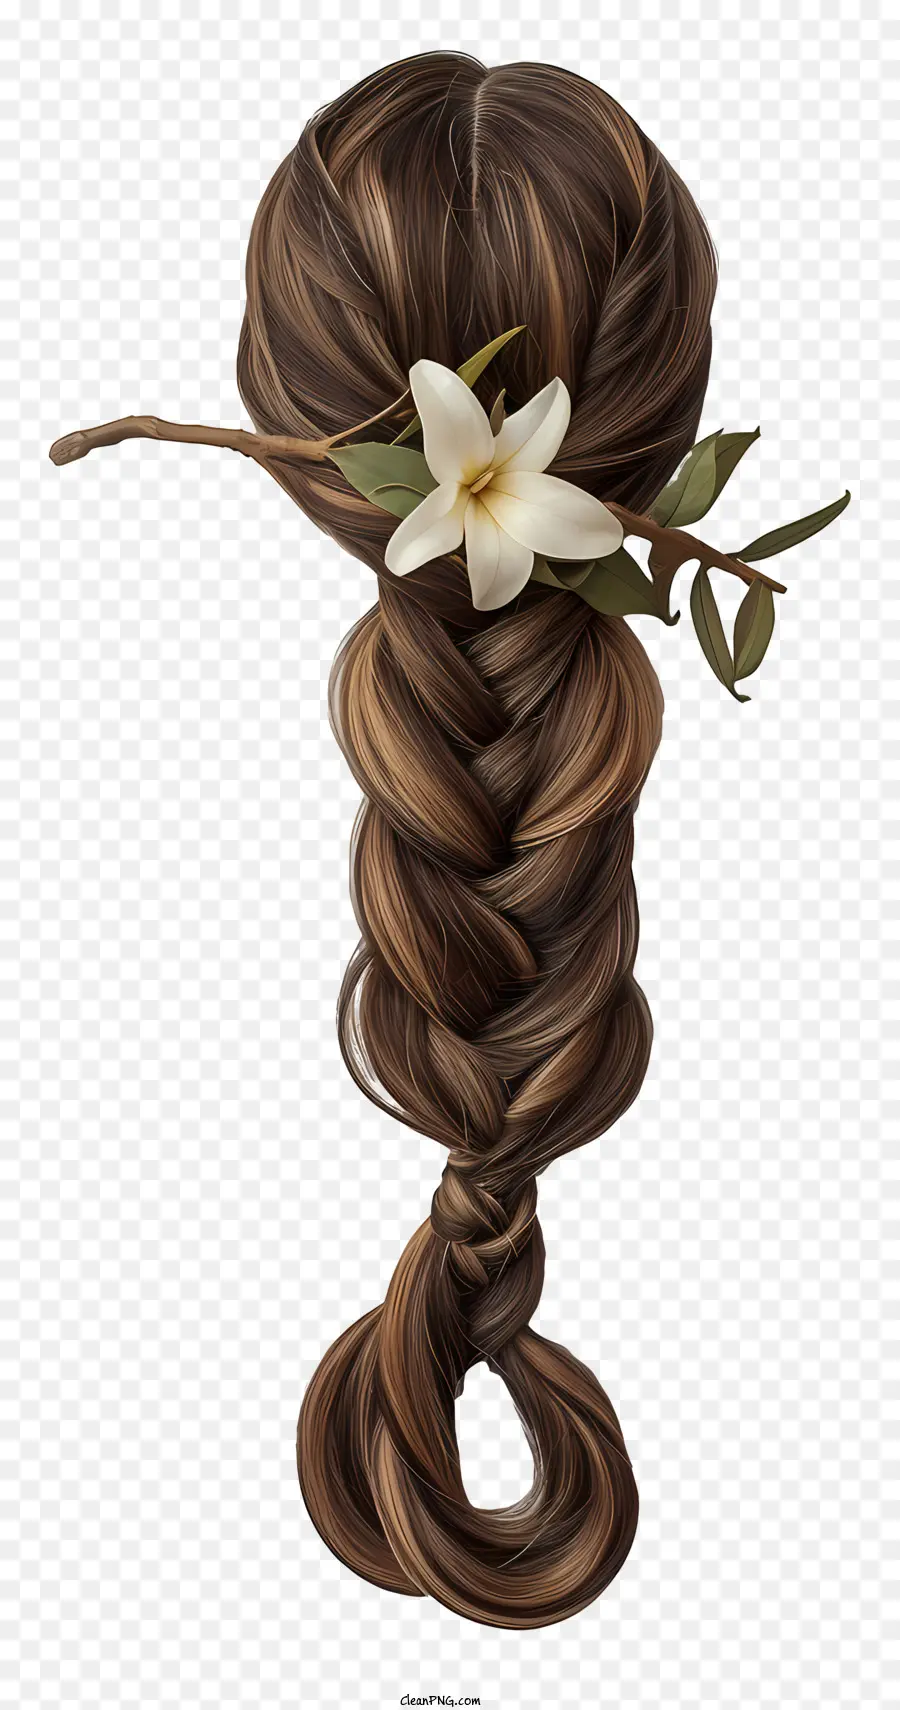 tóc tóc tóc giả tóc dài tóc nâu tóc tóc màu trắng trong tóc phụ kiện - Hình ảnh: Người phụ nữ có mái tóc bện màu nâu dài, được trang trí bằng hoa